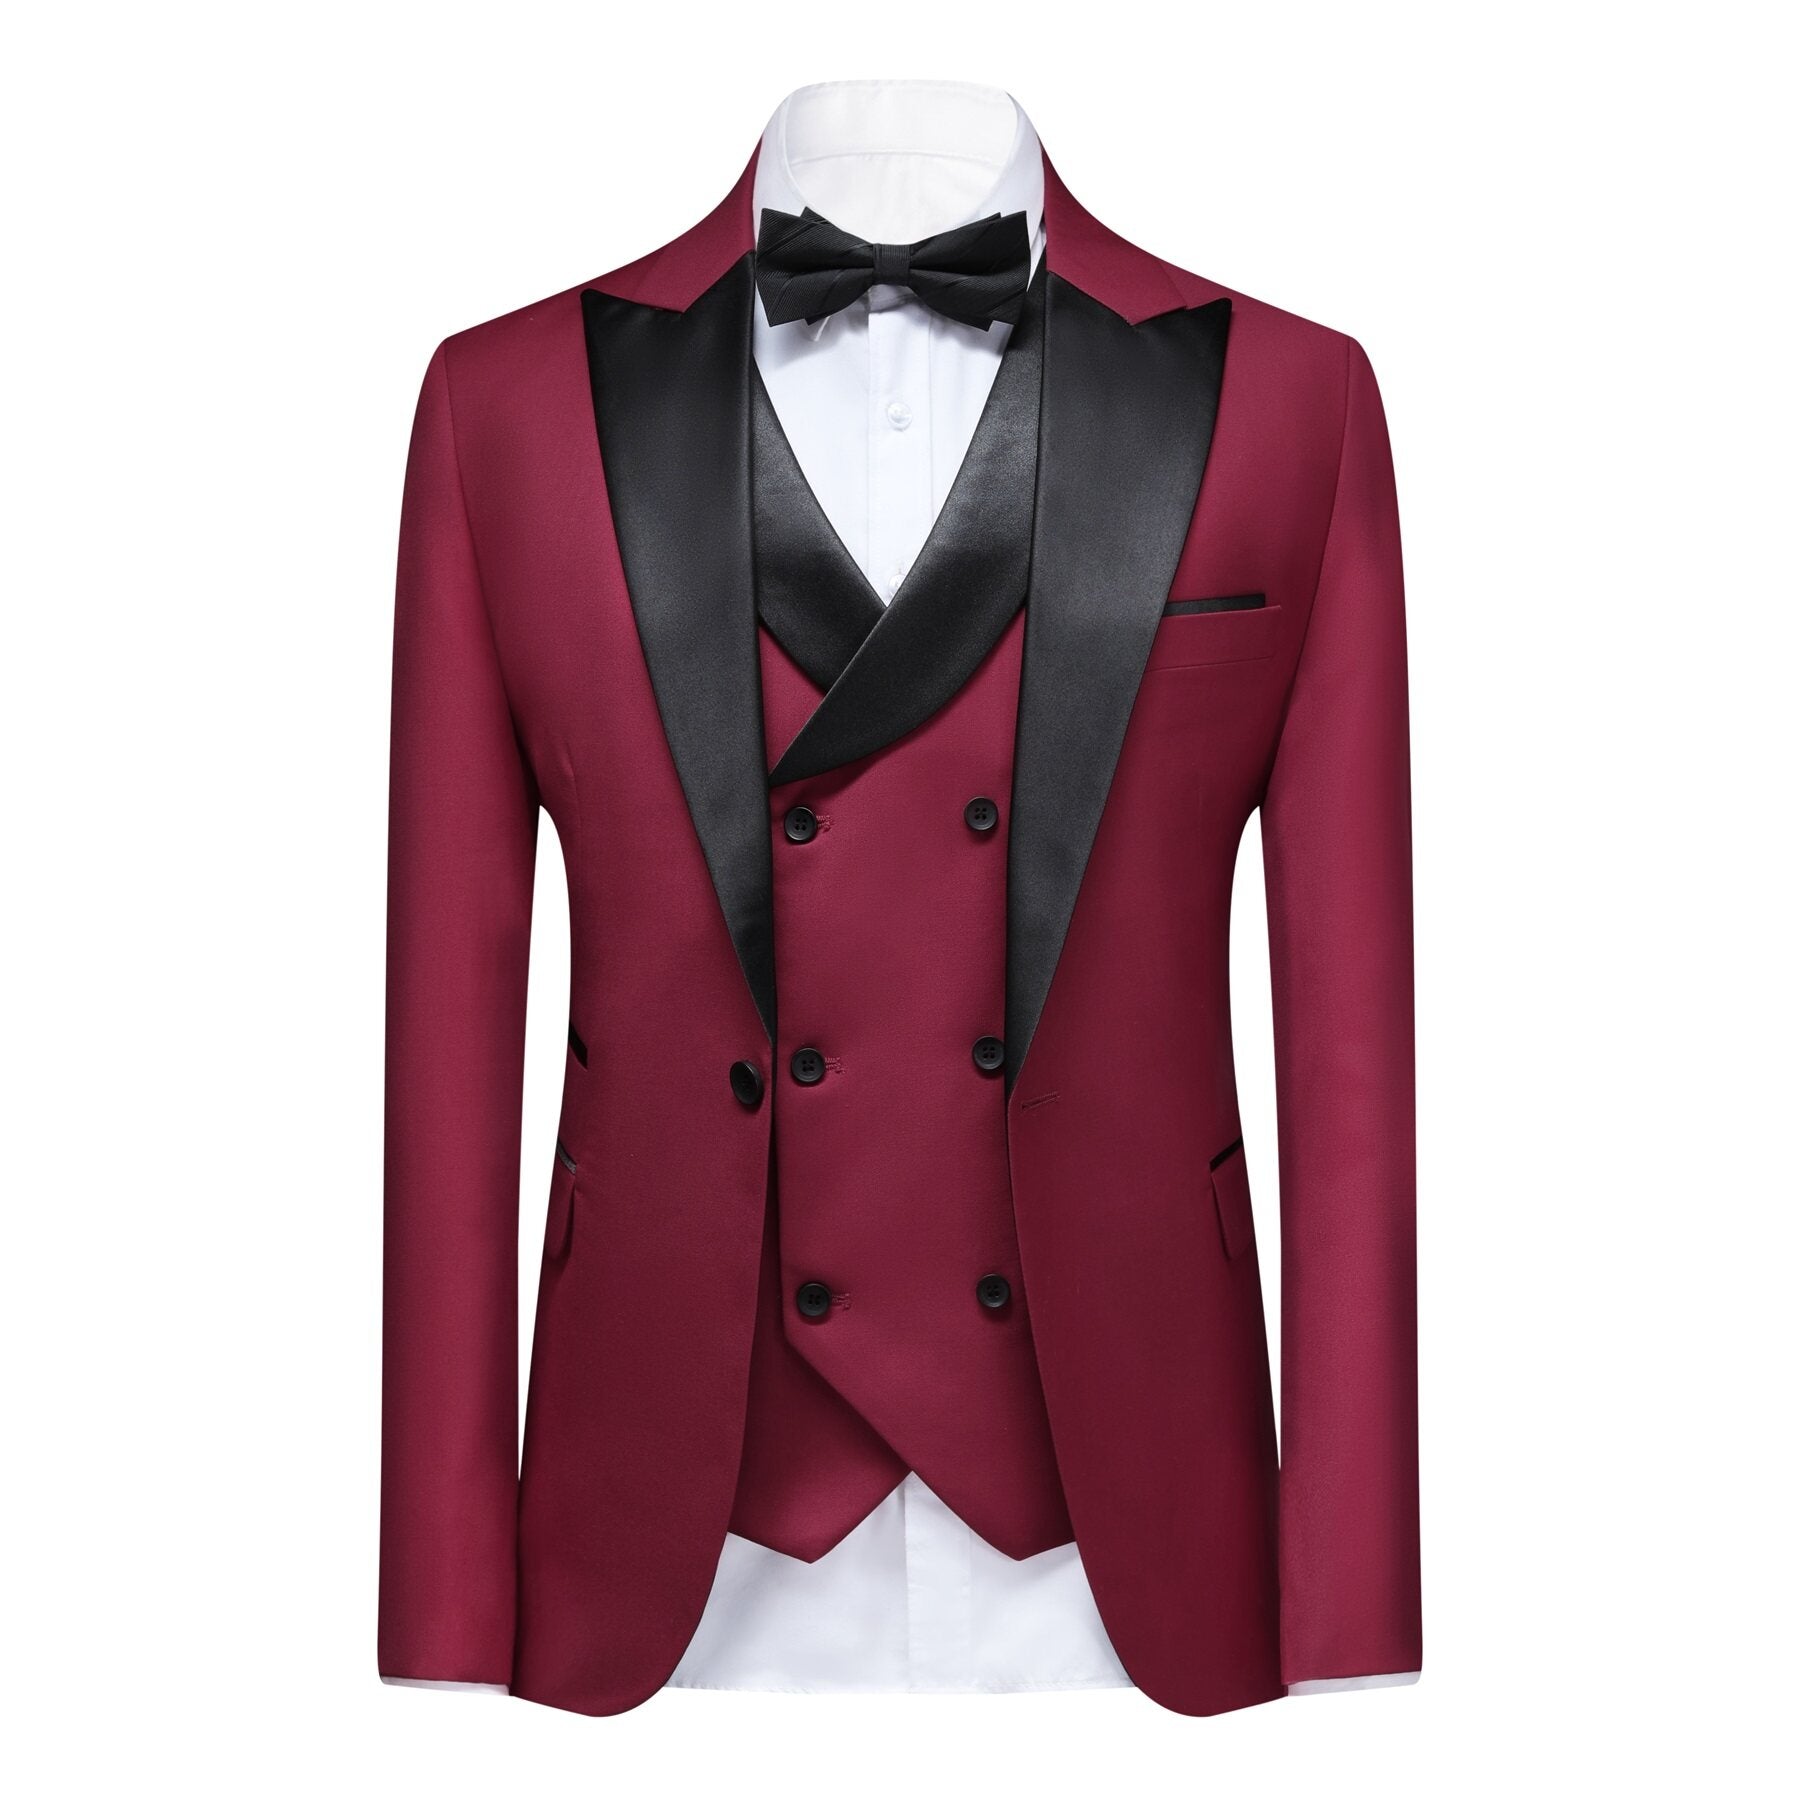 3-piece Men's Solid Color Notched Lapel Back Center Vent Suit Wine Red